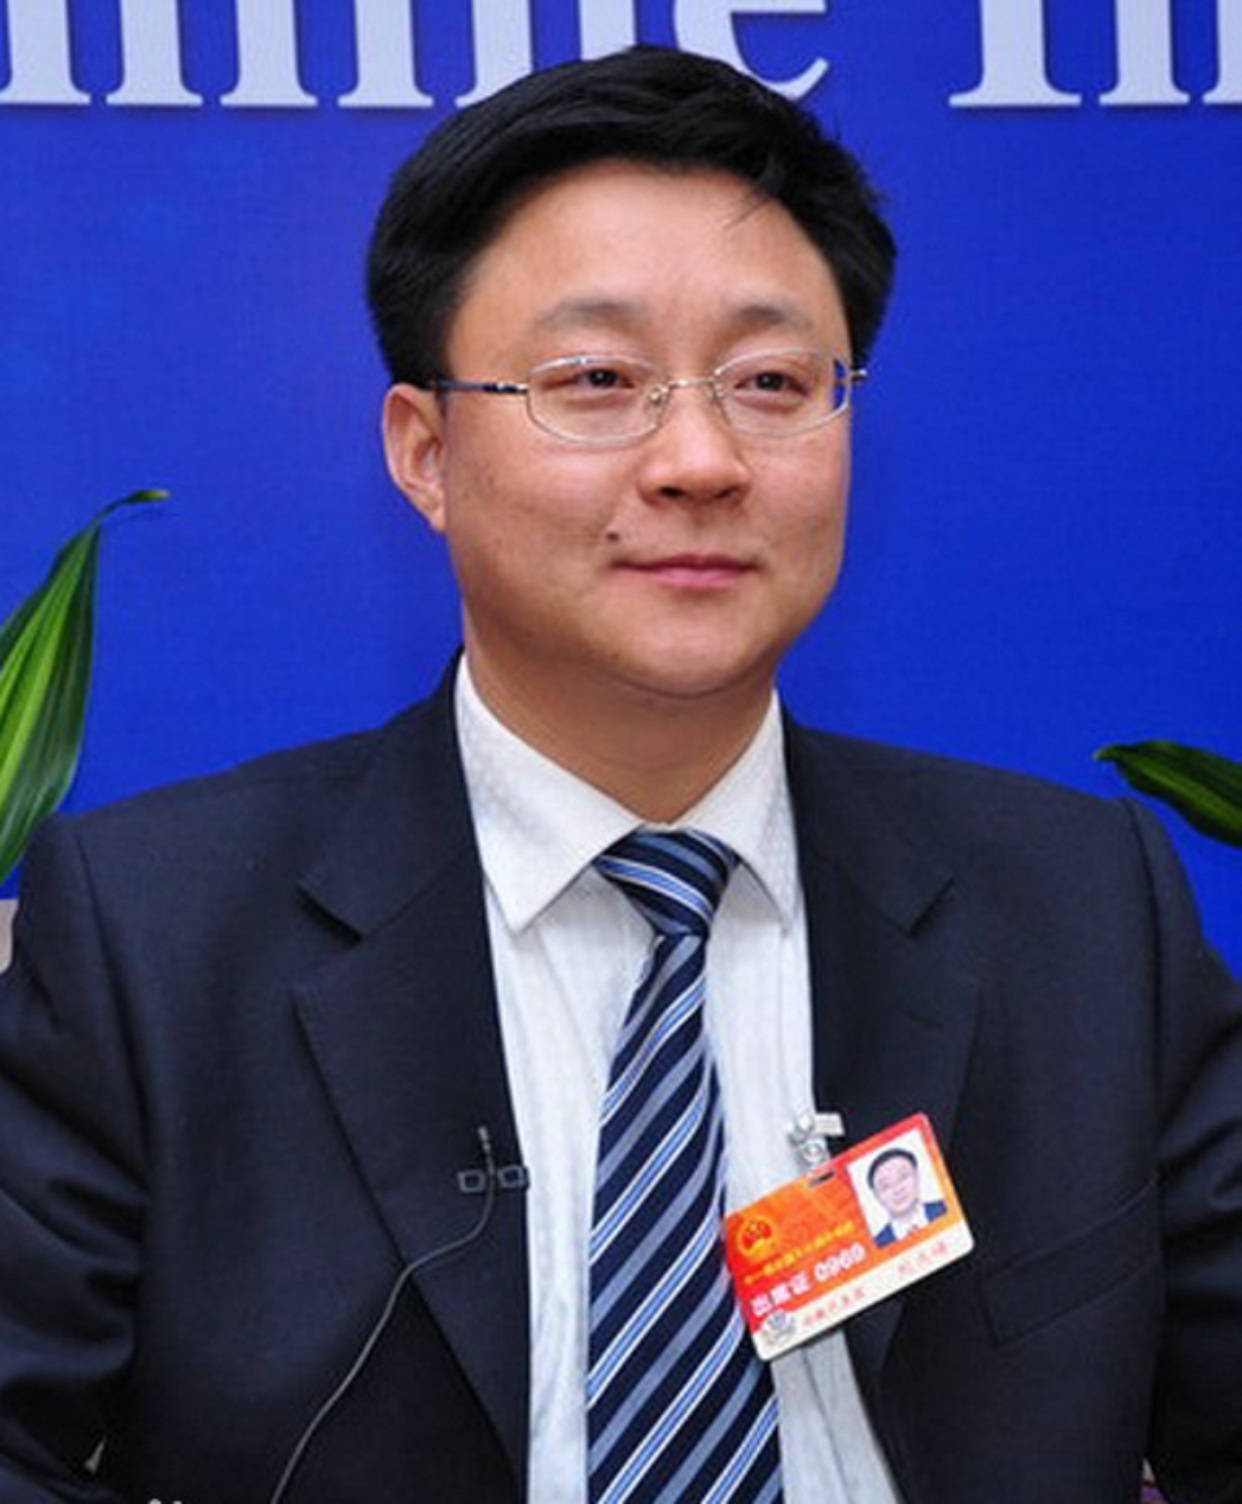 公开资料显示,刘庆峰,1973年2月出生,安徽泾县,现任科大讯飞股份有限